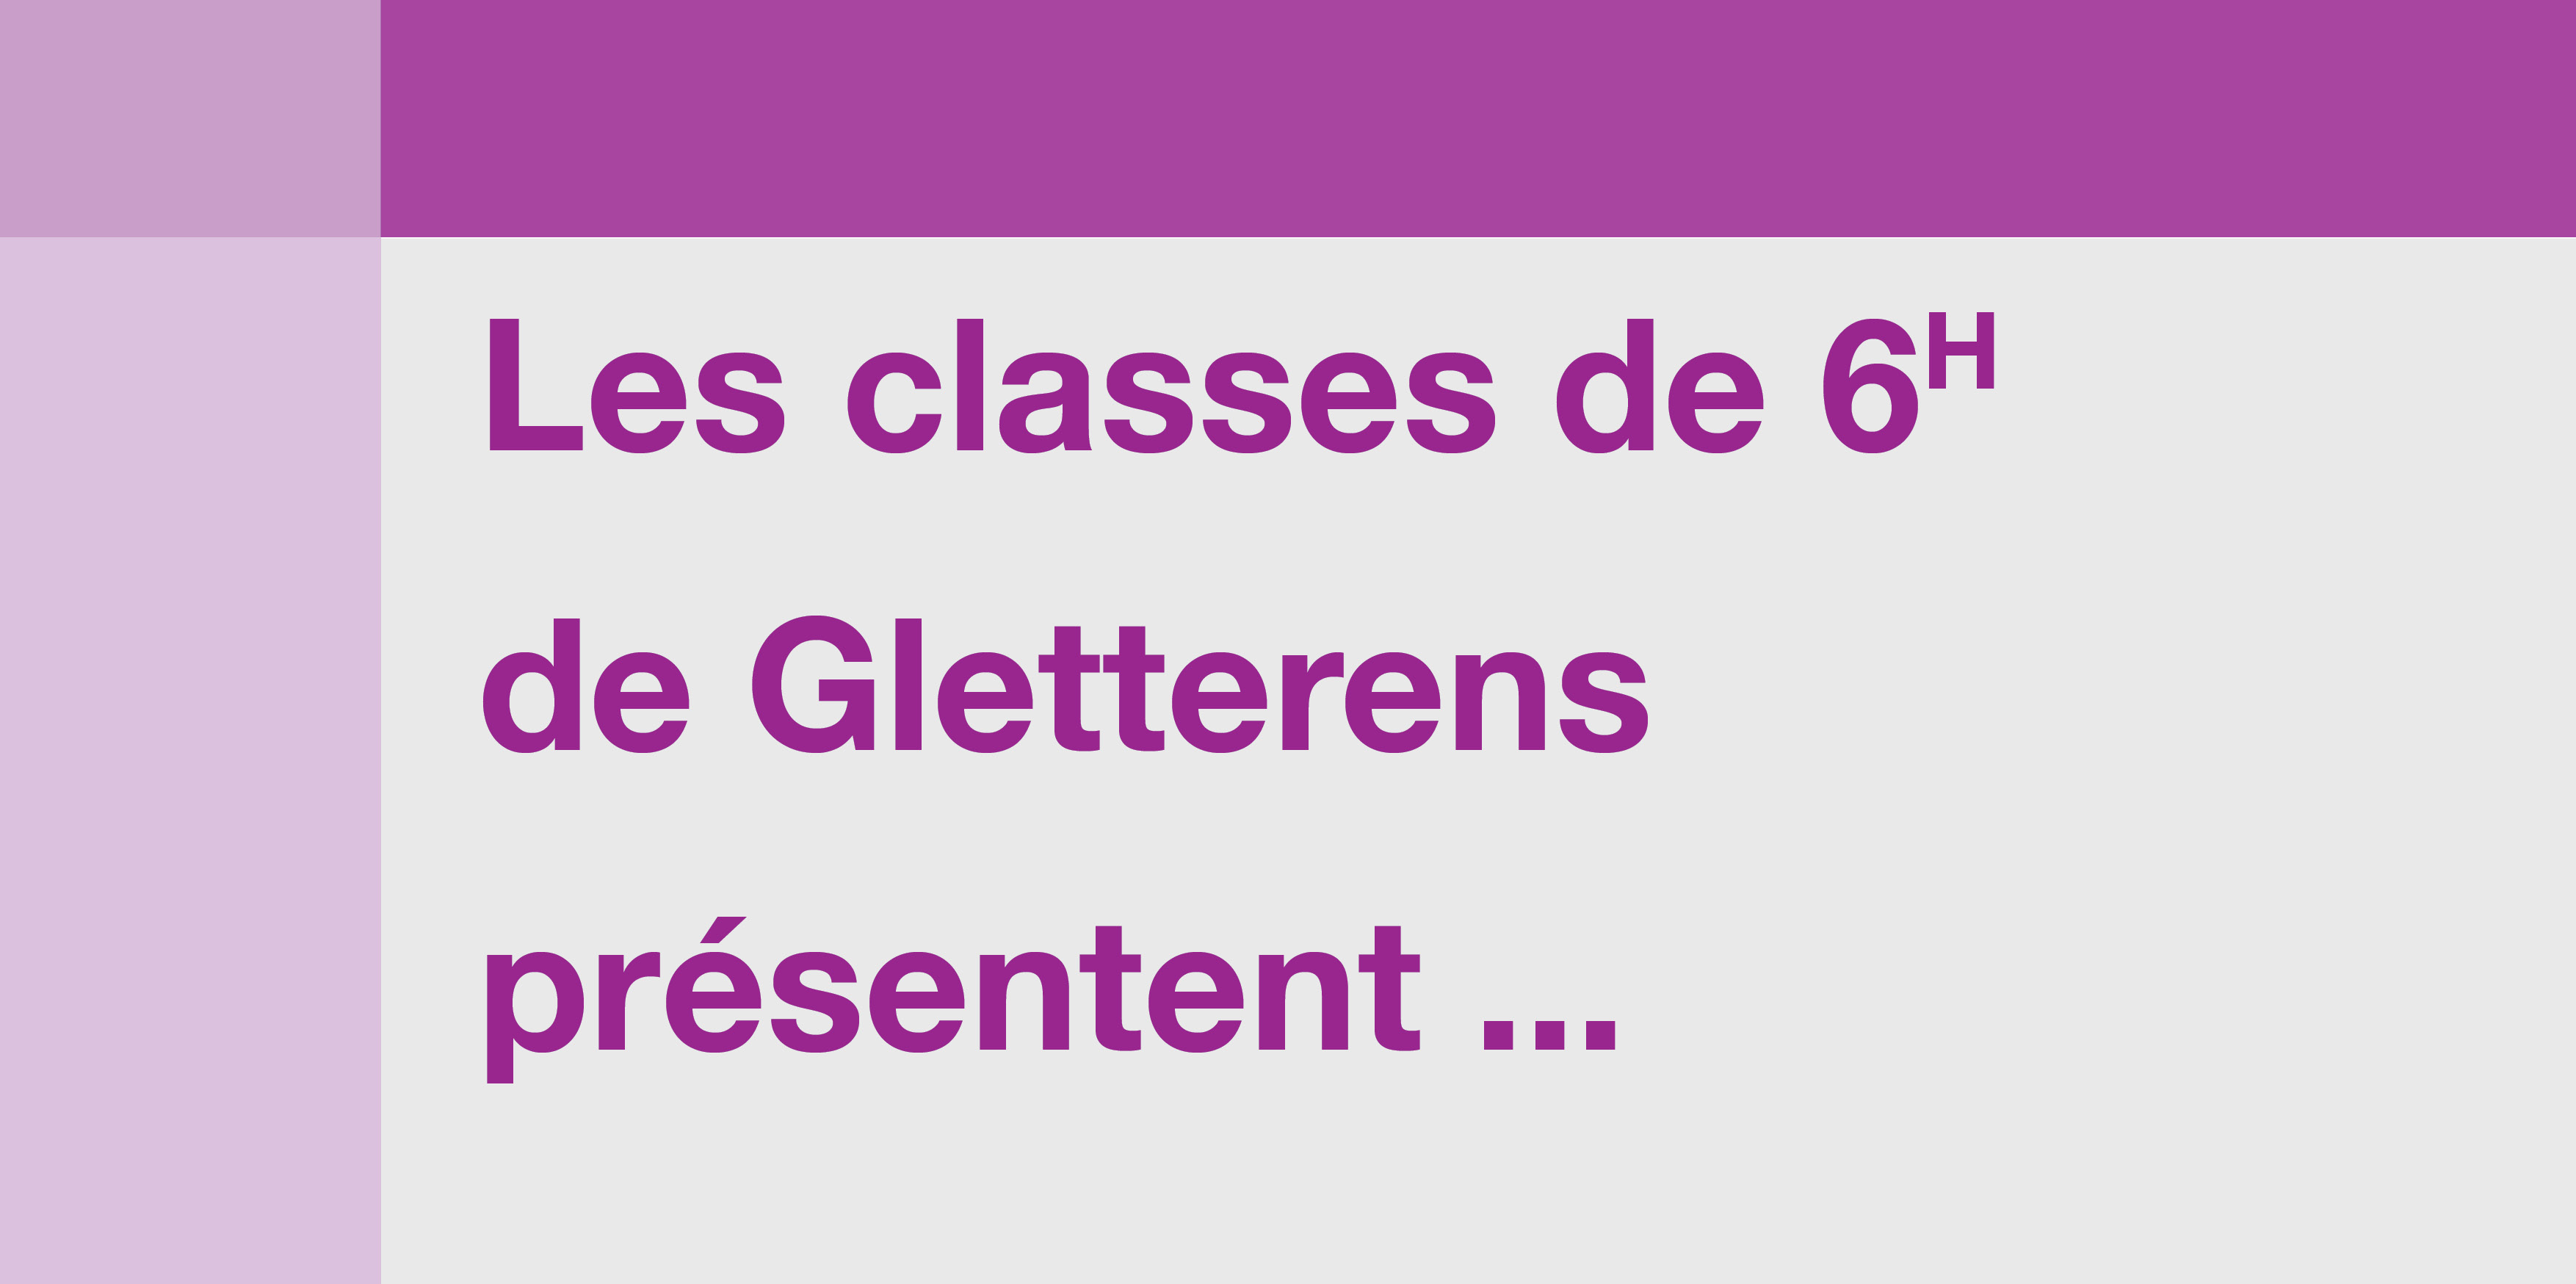 Les classes de 6H de Gletterens présentent ...